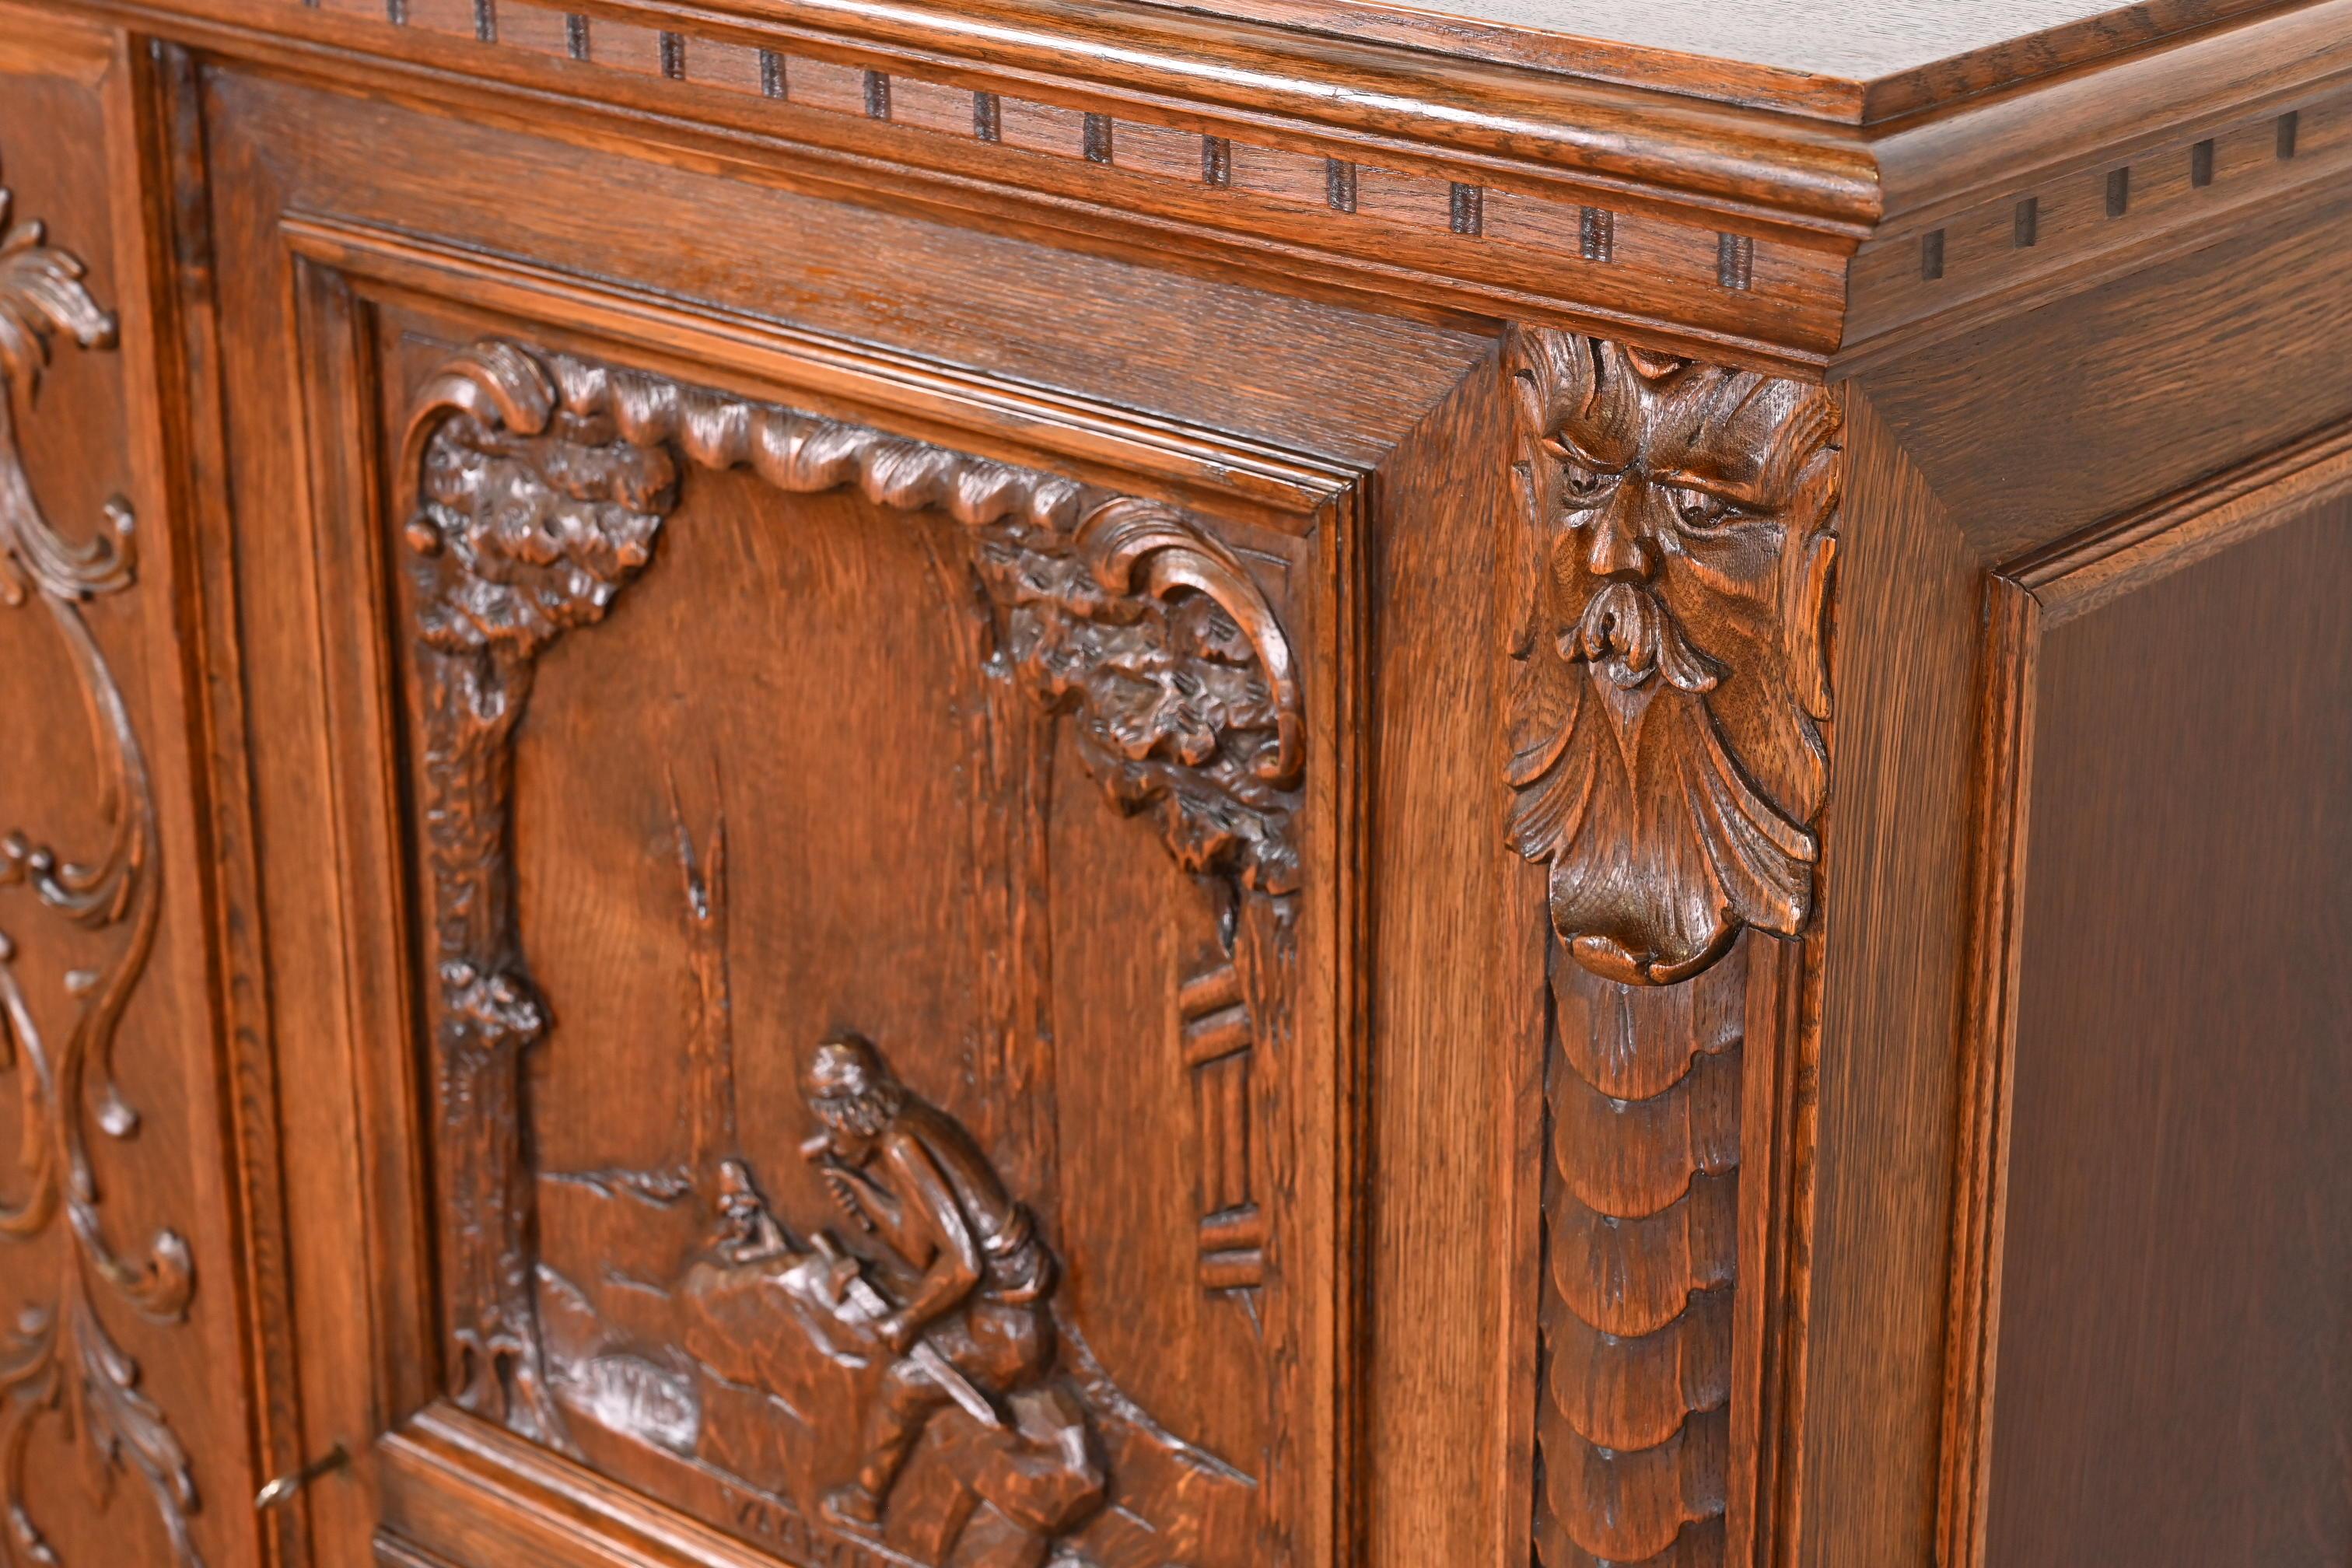 Antique Danish Renaissance Revival Ornate Carved Oak Sideboard or Bar Cabinet 10